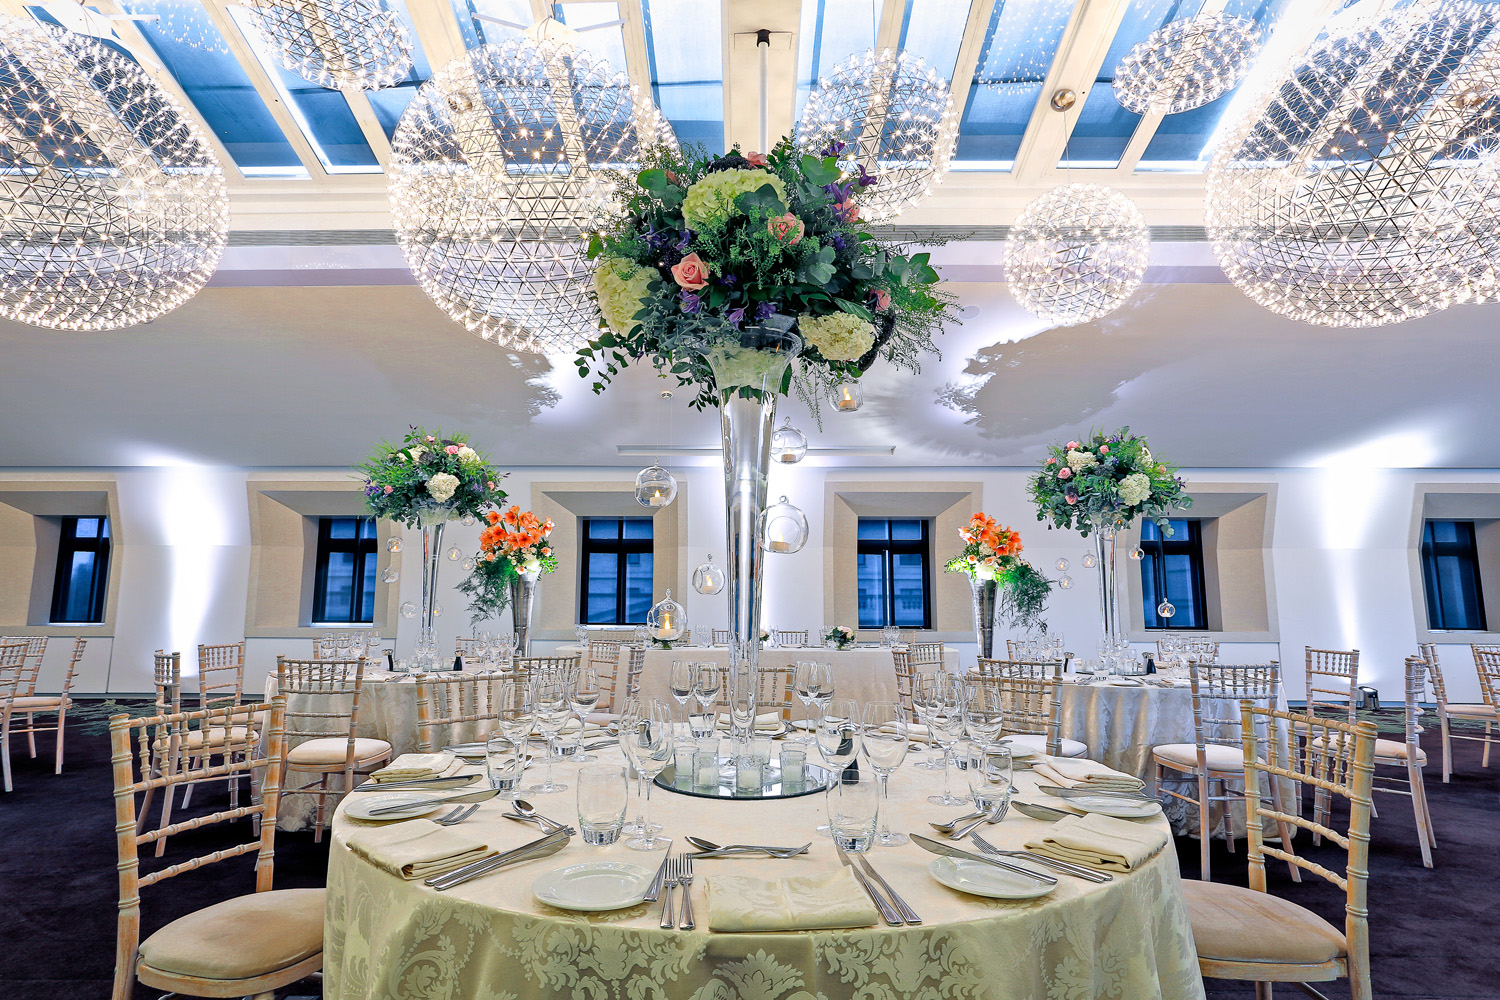 Wedding Venue In London | Perfect Wedding Venue